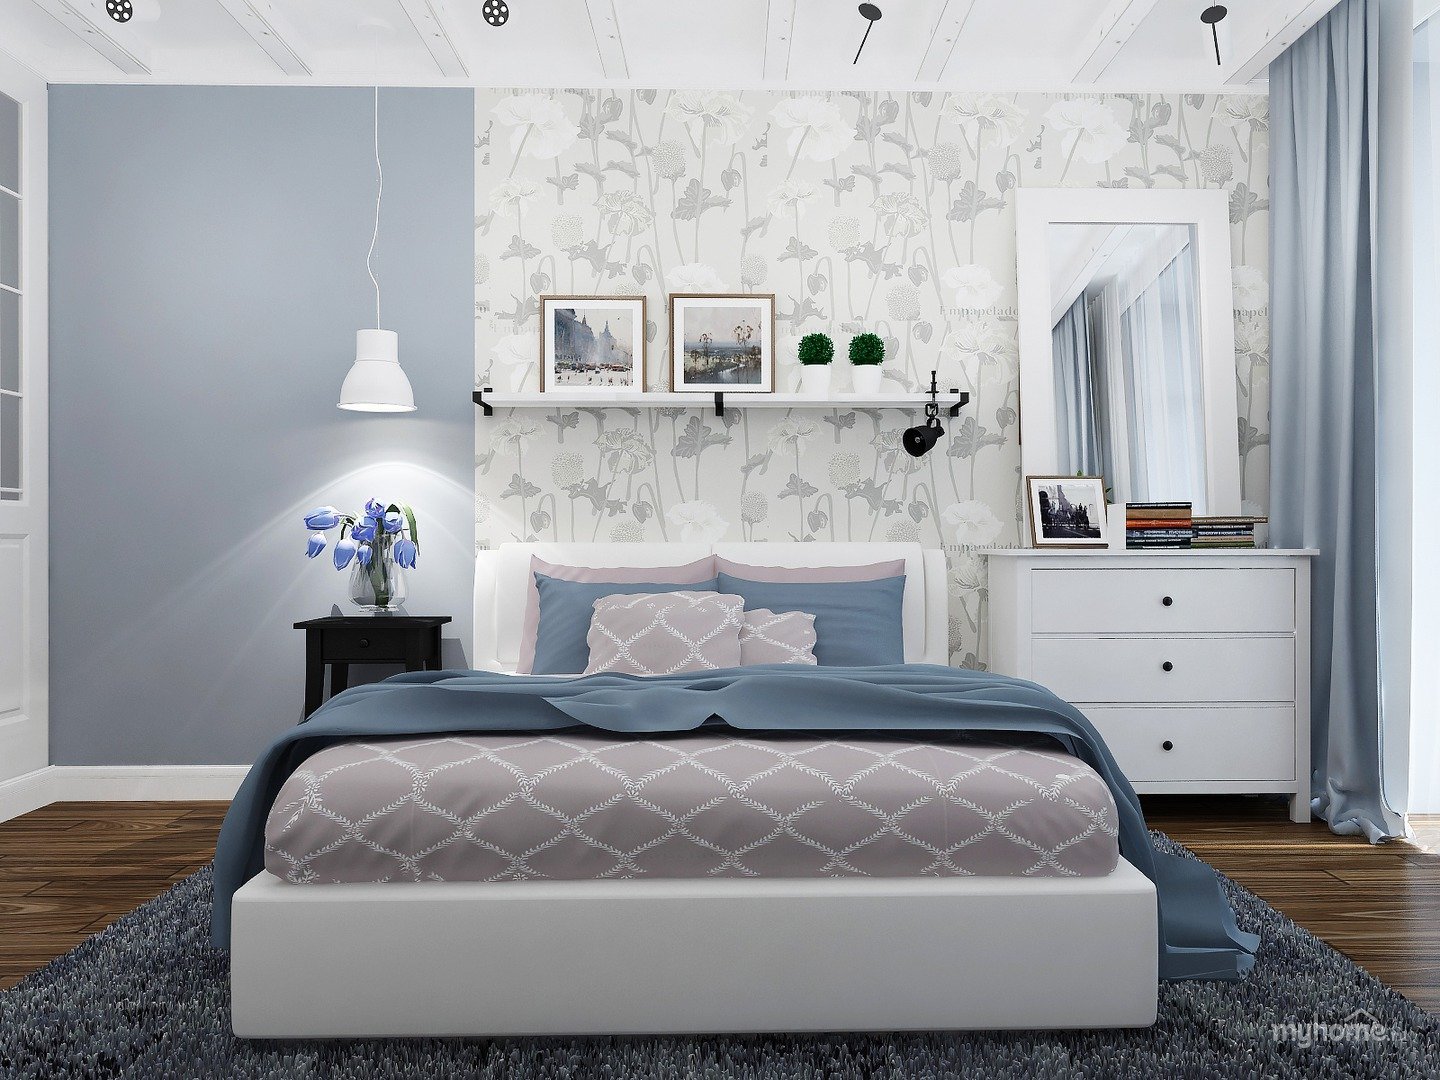 Изысканность и гармоничность домашнего интерьера : стильный и уютный дизайн с серыми обоями